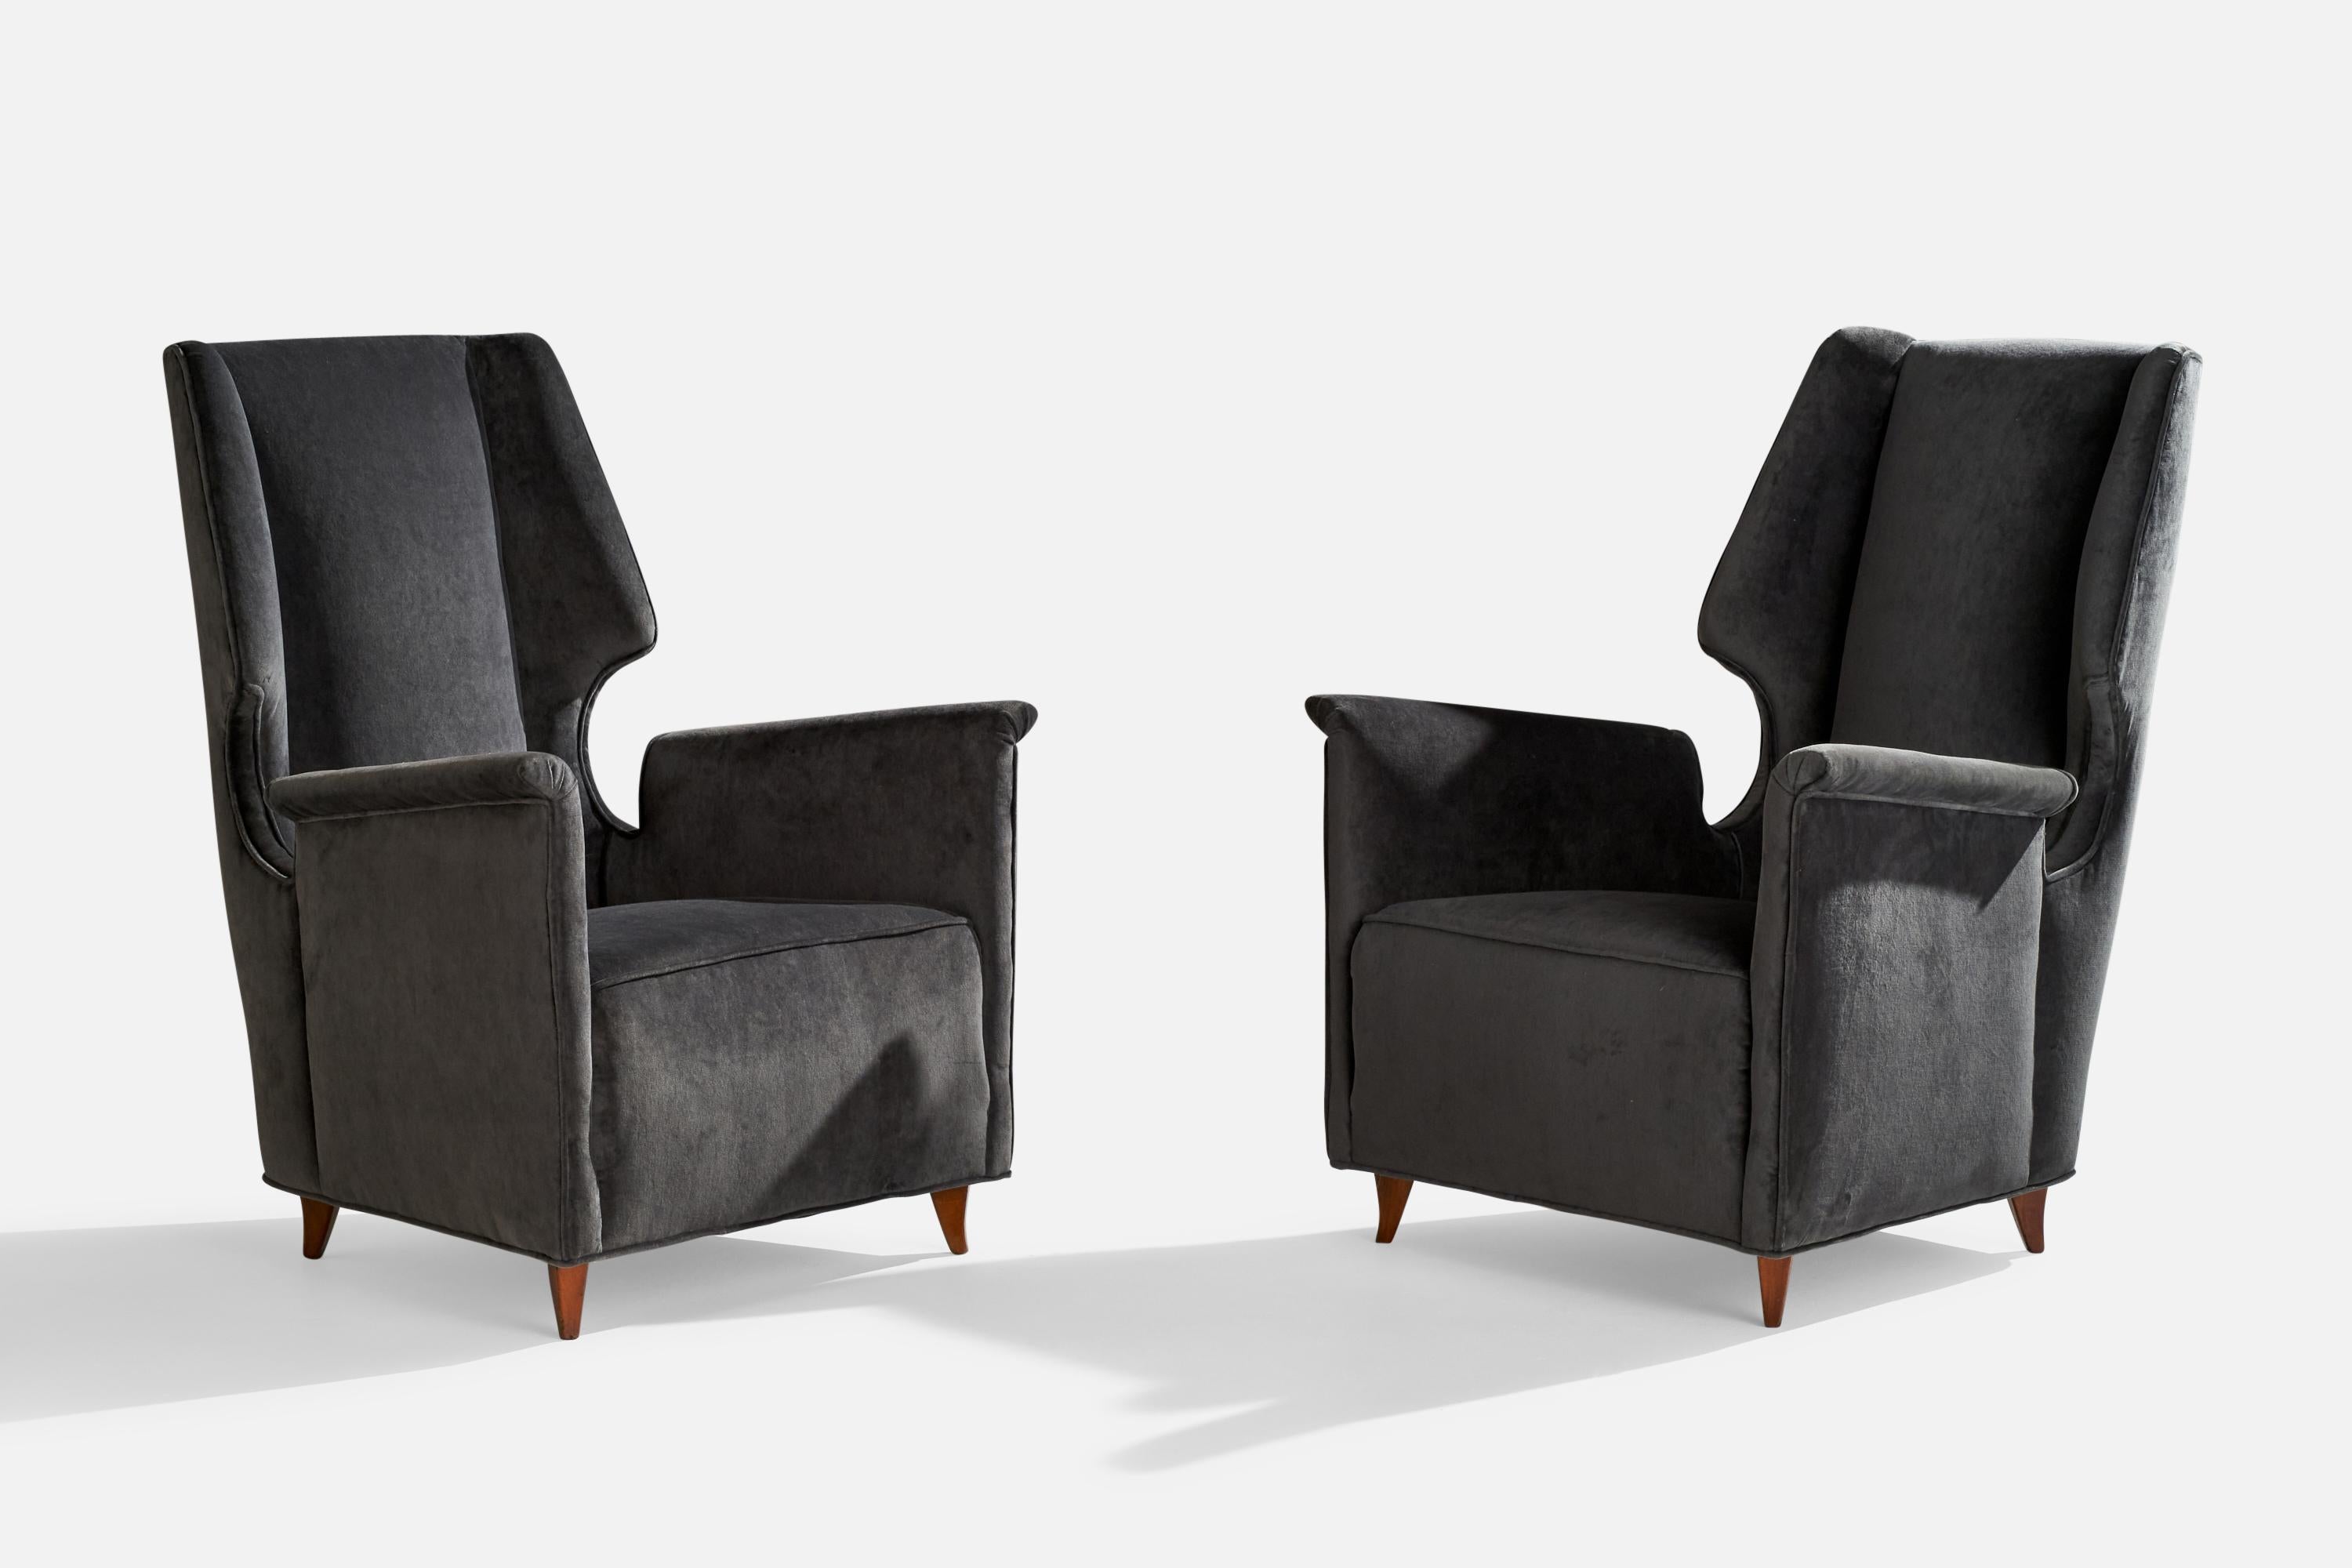 Ein Paar Sessel aus Holz und dunkelgrauem Samt, entworfen und hergestellt in Italien, 1950er Jahre.

Sitzhöhe 15.56